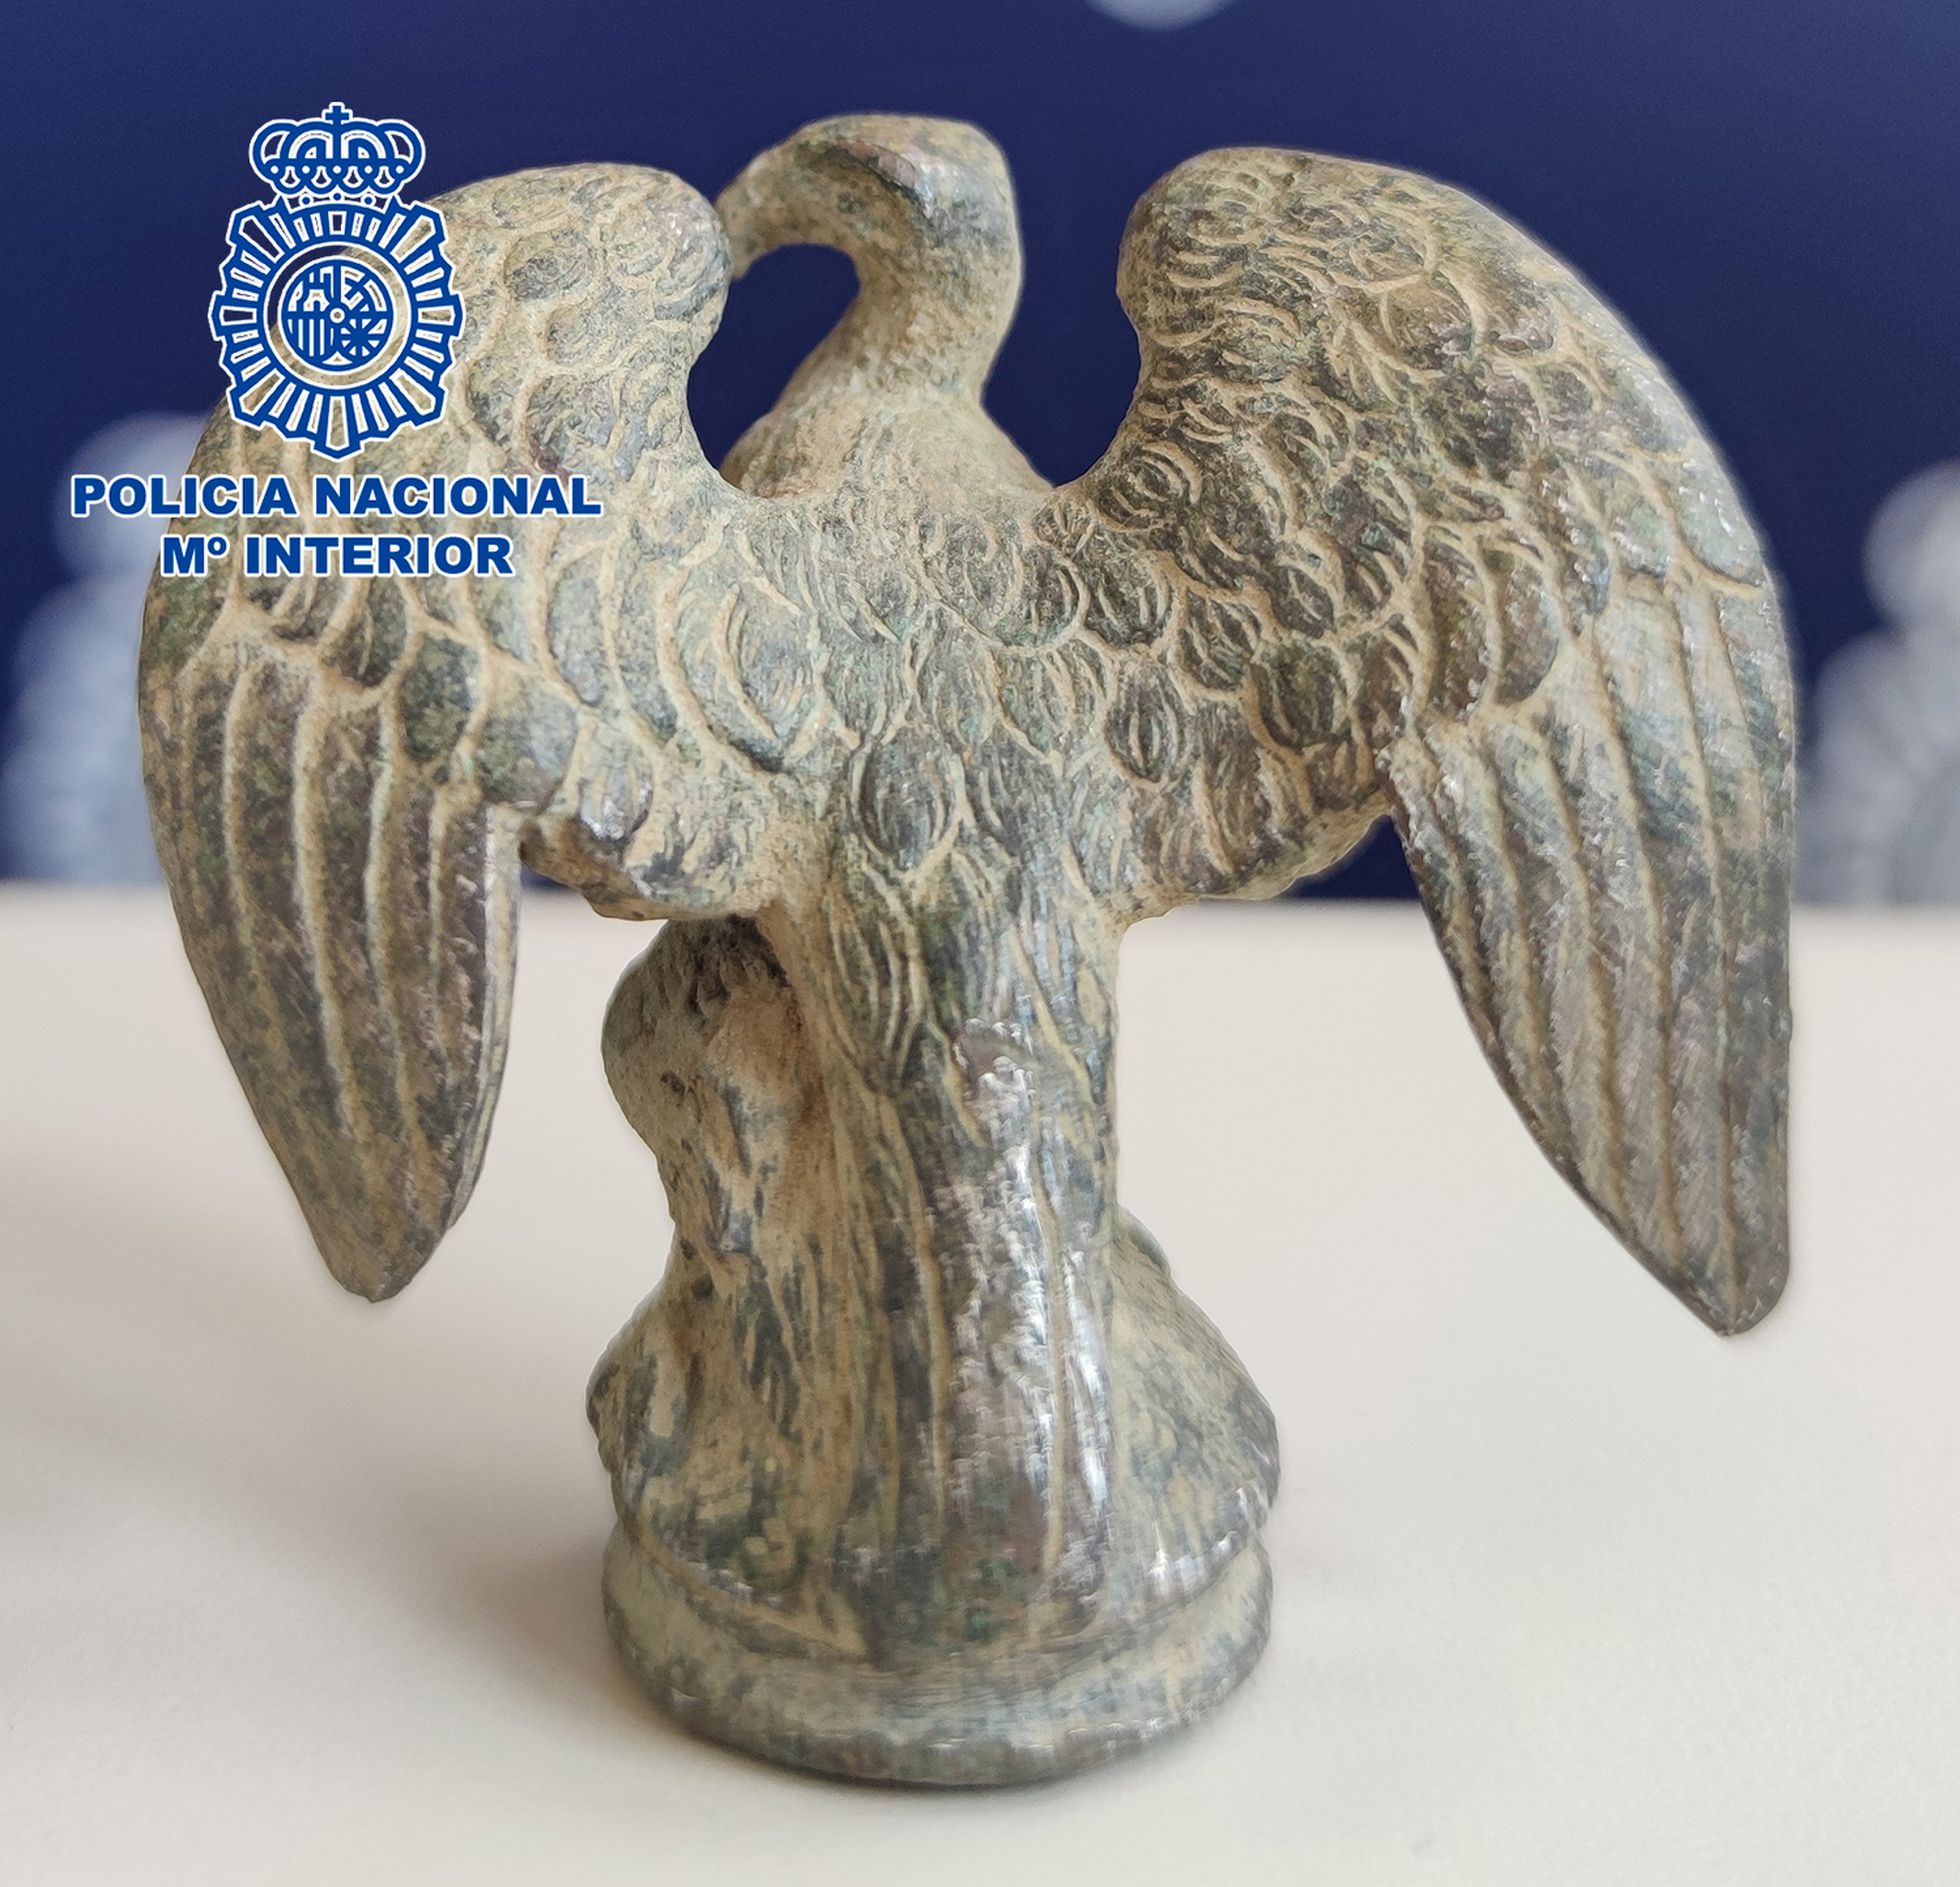 El águila de la legión romana recuperada por la policía tiene un importante valor histórico.